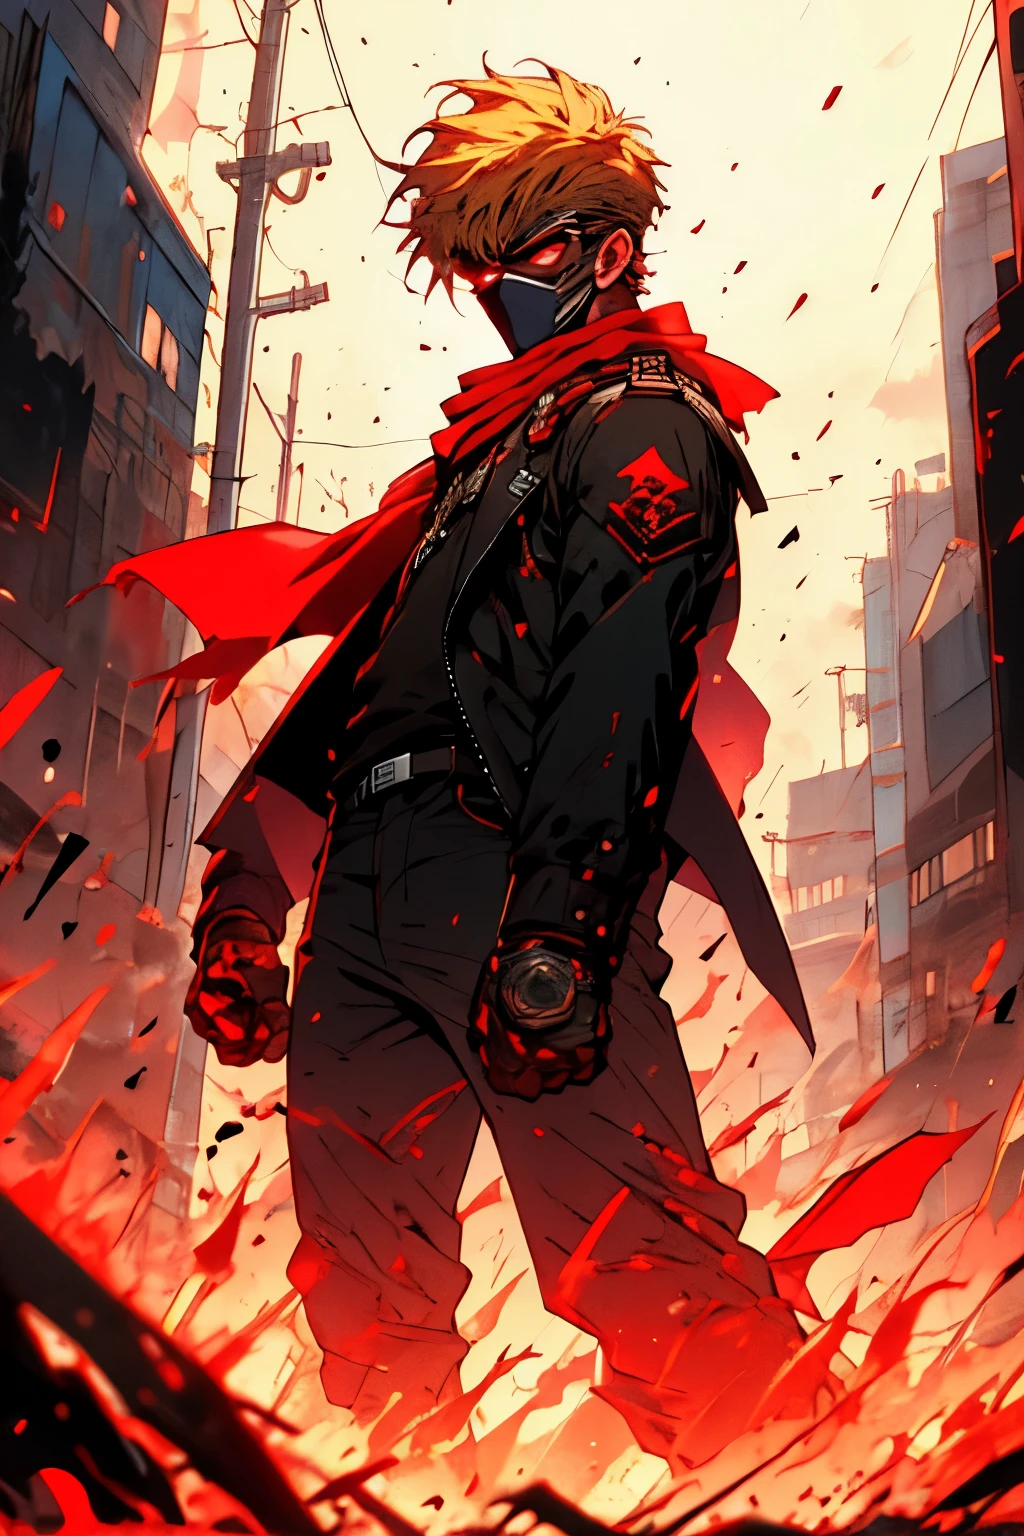 瘦高個子男人，戴著紅色頭巾，留著金色短髮，臉頰上貼著創可貼，穿著紅色和黑色夾克，肩膀上戴著黑色面罩，俯視著一座啟示錄城市